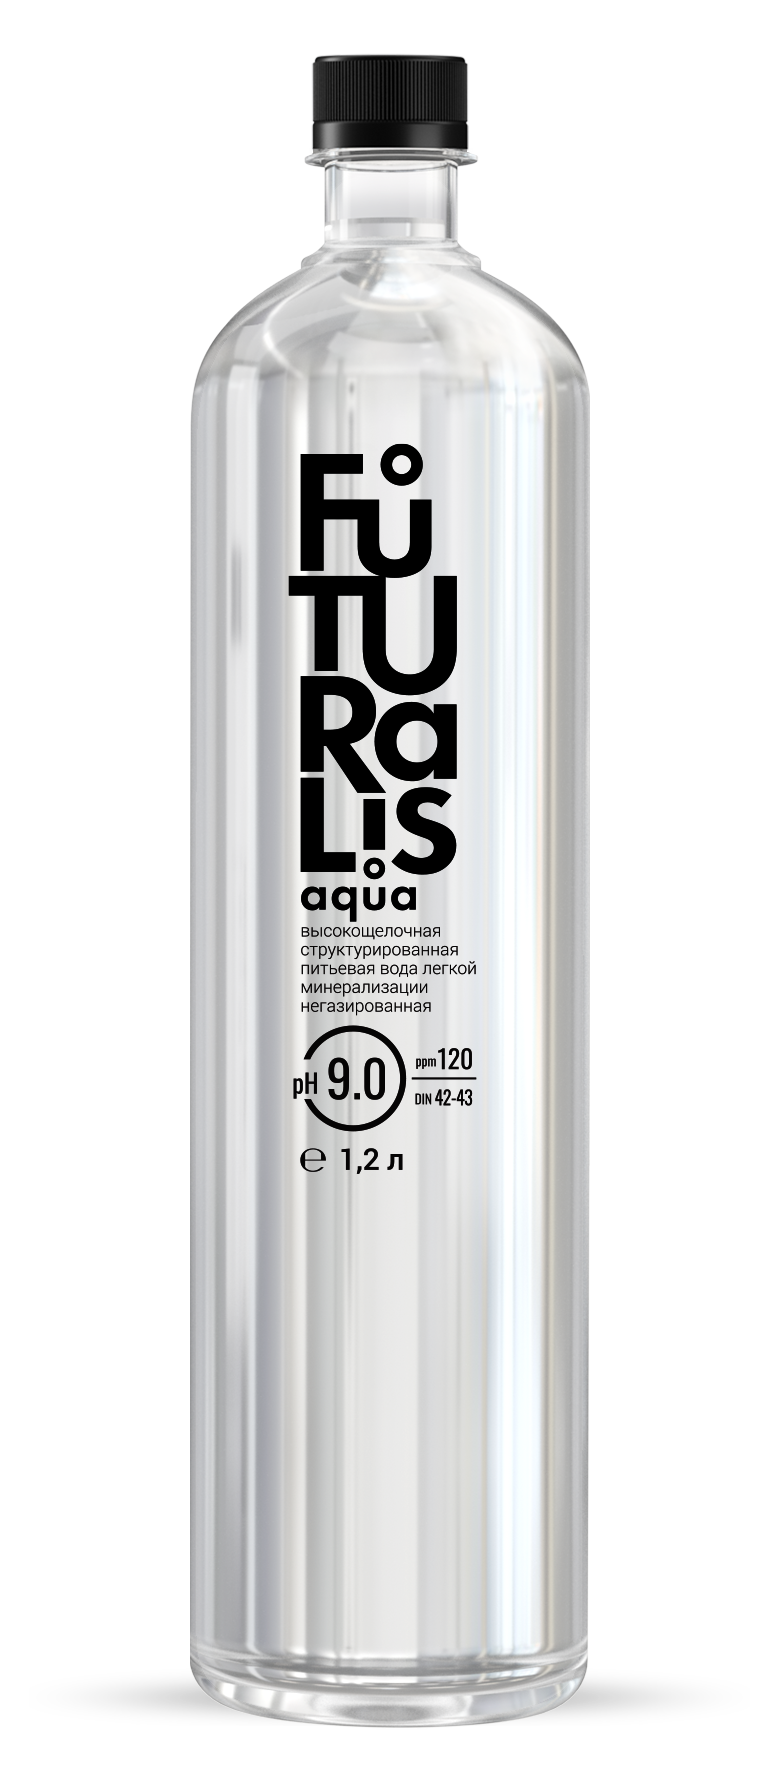 Вода питьевая высокощелочная структурированная легкой минерализации "Futuralis aqua" 1,2 л. (упаковка 6 бутылок)